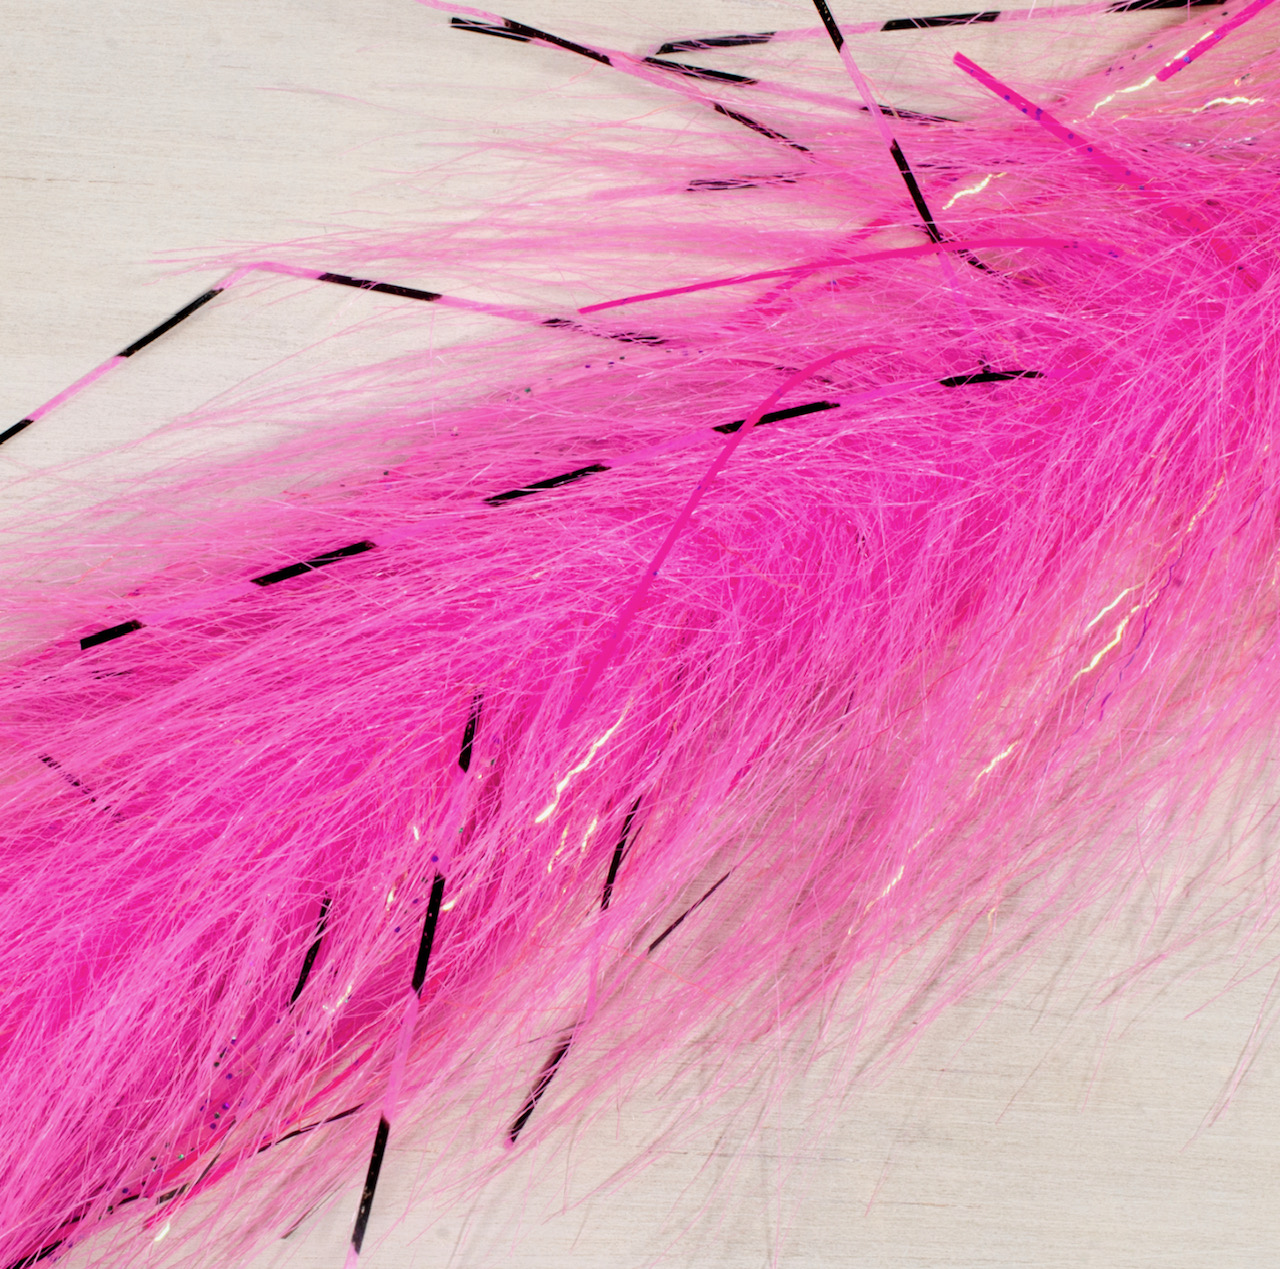 Fair Flies 5D Brushes - Steely Pink